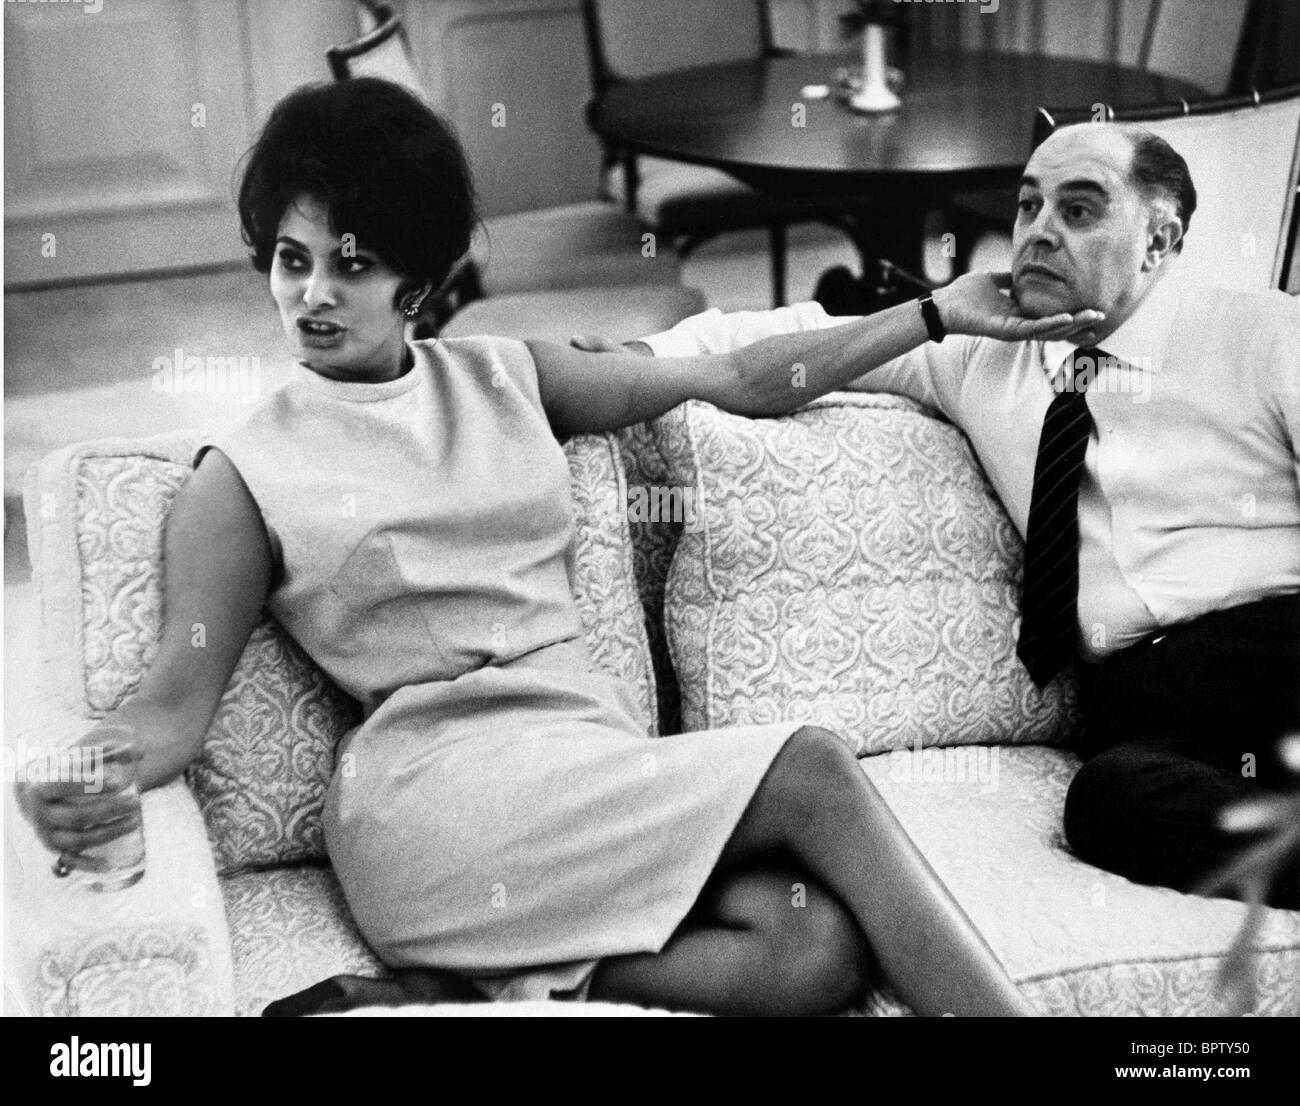 SOPHIA LOREN & CARLO PONTI HUSBAND & WIFE (1965) Stock Photo